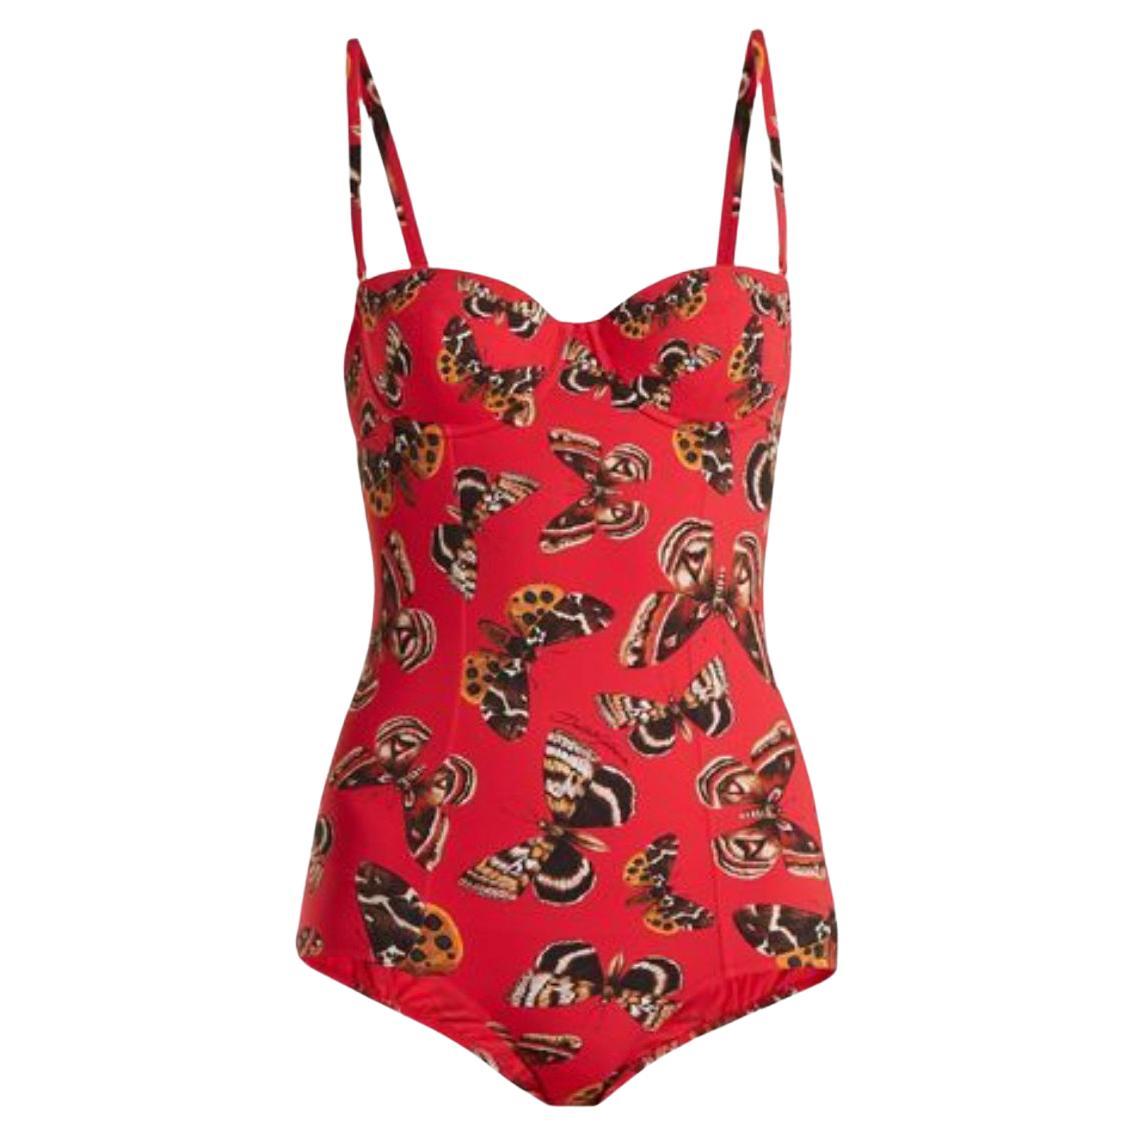 Dolce & Gabbana Red Butterfly One-piece Full Swimsuit Swimwear Beachwear Bikini For Sale